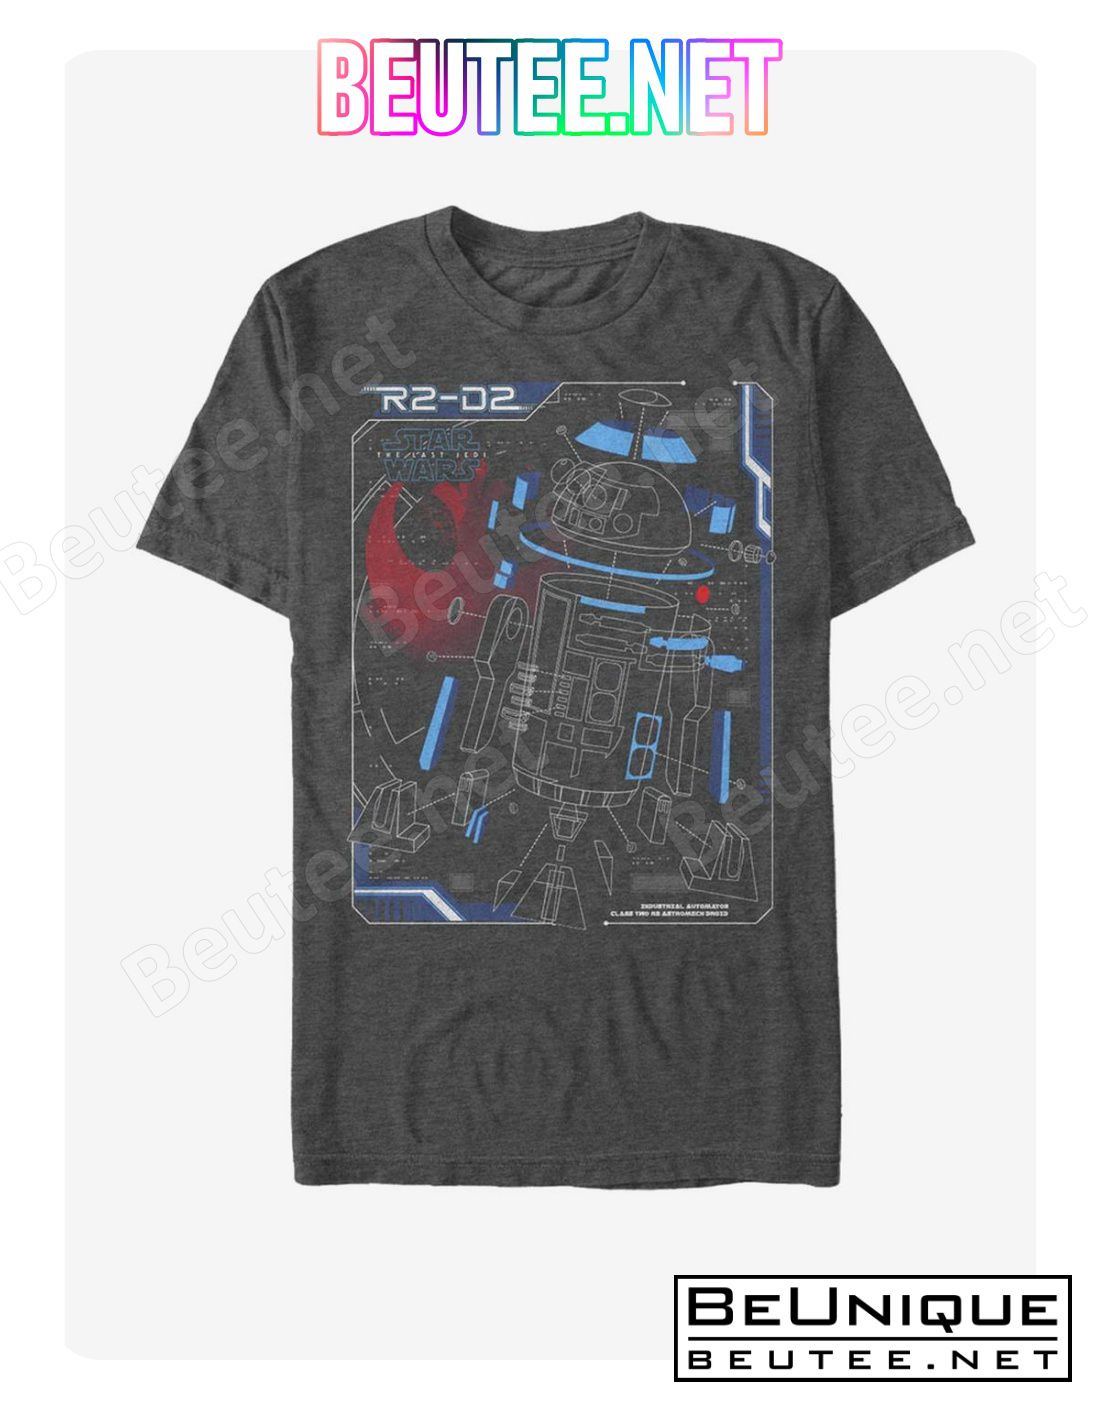 Star Wars R2-D2 Deconstruct T-Shirt